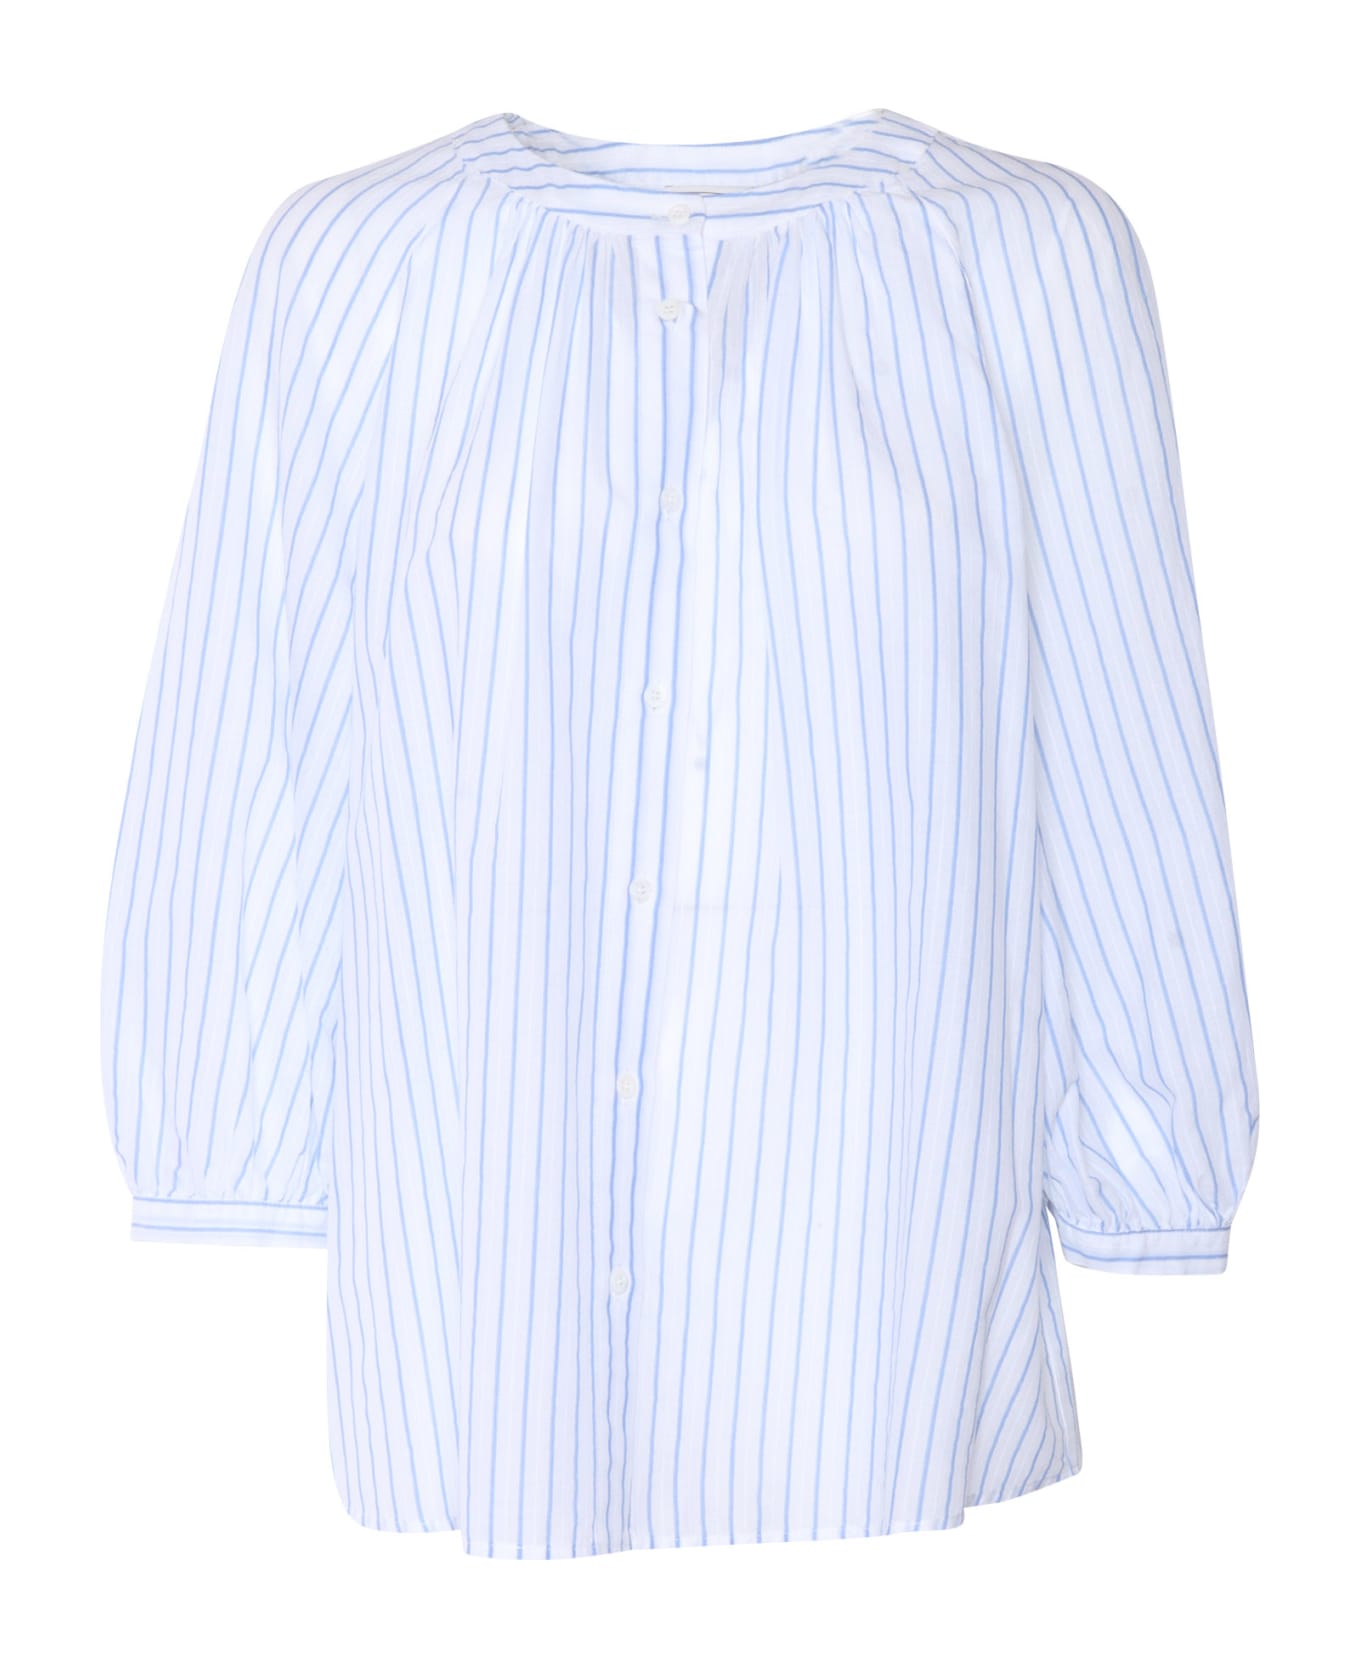 Peserico White Shirt With Stripes - WHITE